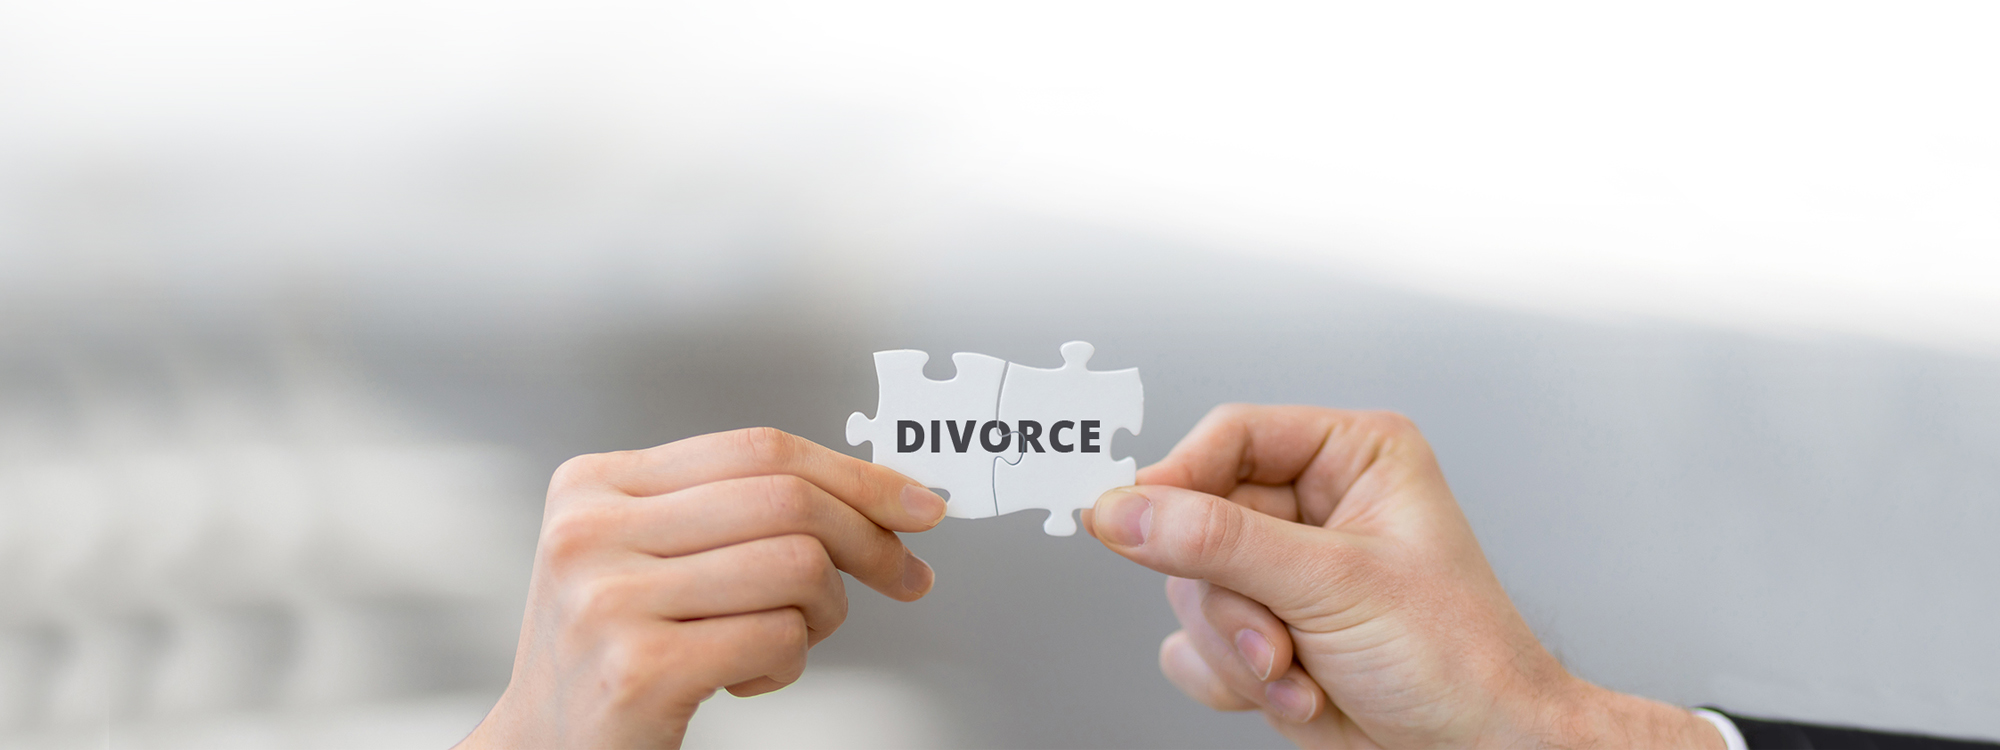 West Bend divorce mediation attorney